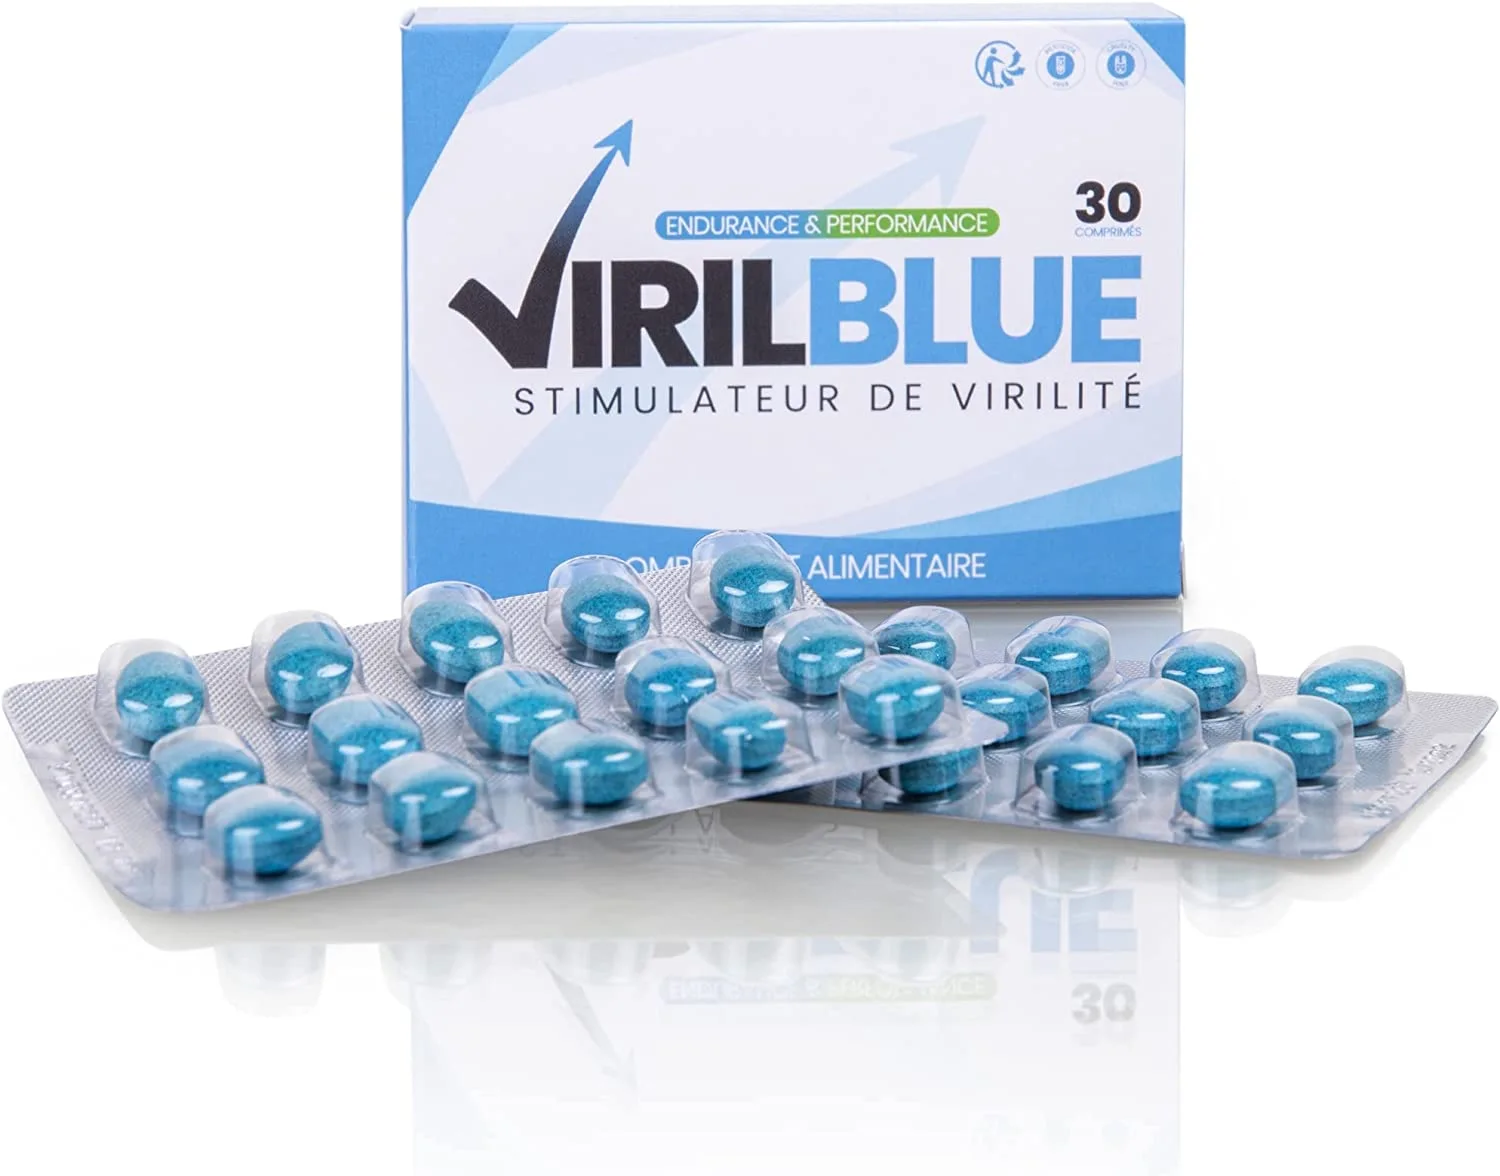 Uma foto mostrando Virilblue